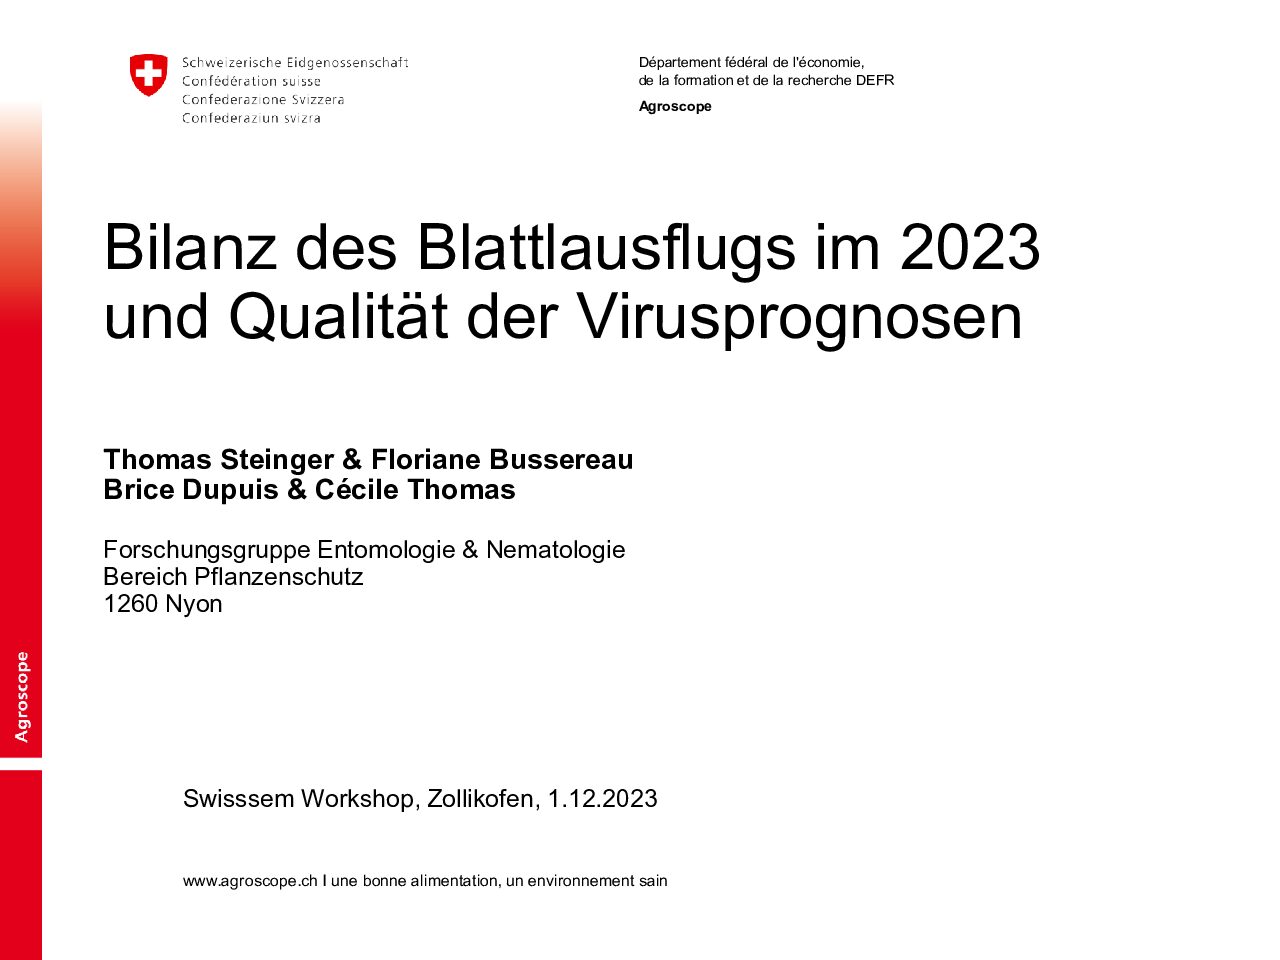 Bilanz des Blattlausflugs im 2023 und Qualität der Virusprognosen